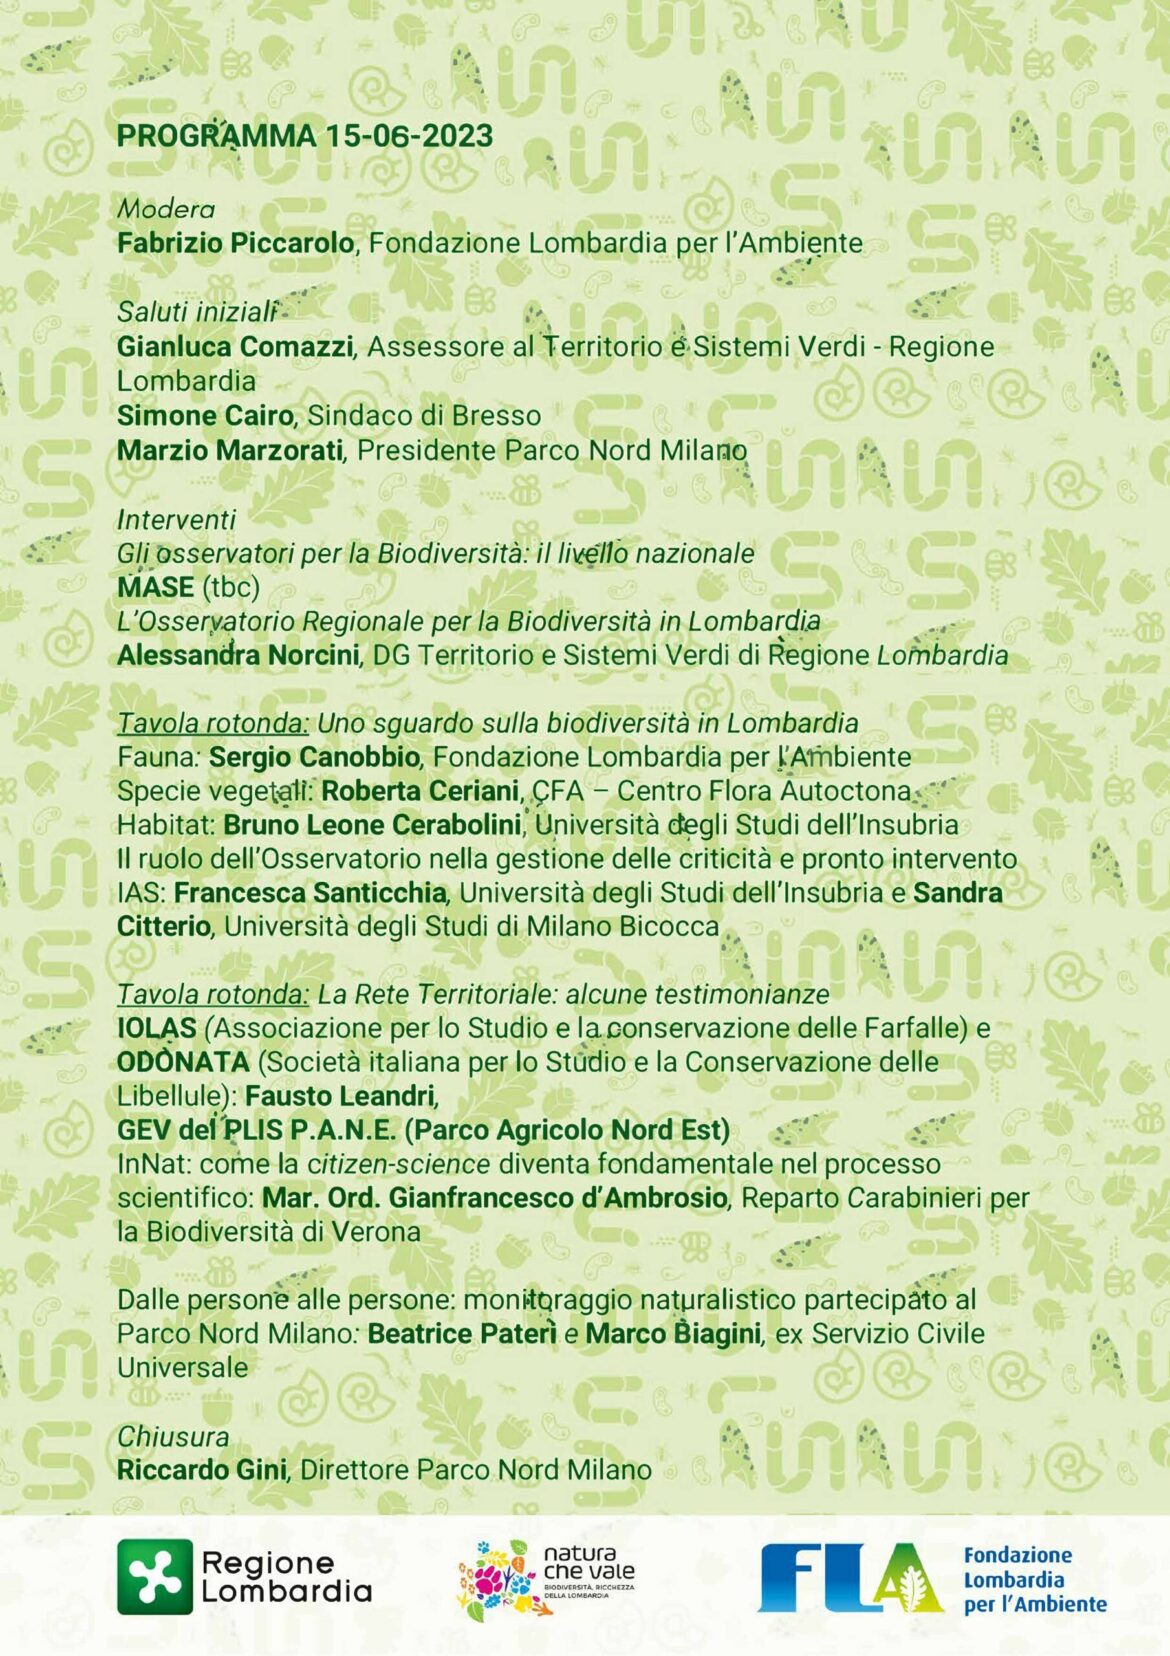 Programma-Insieme-per-la-biodiversita-in-Lombardia-new_page-0002-scaled.jpg